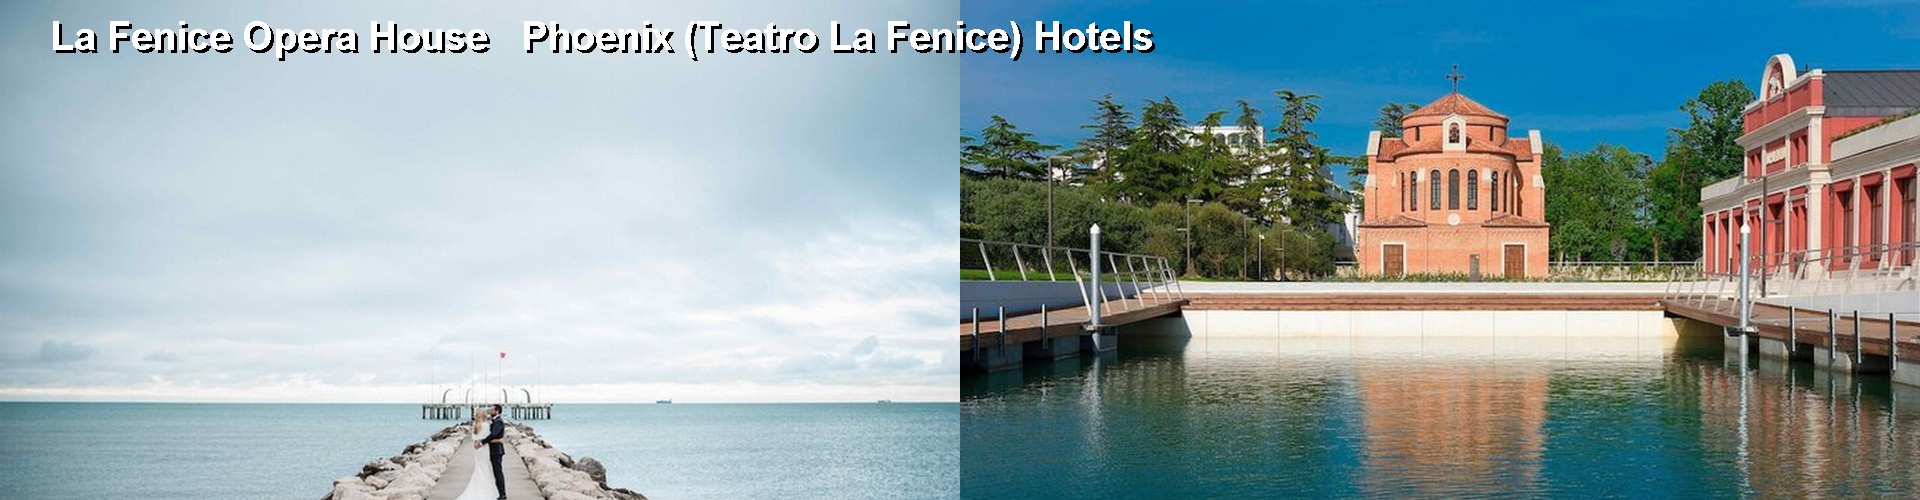 5 Best Hotels near La Fenice Opera House   Phoenix (Teatro La Fenice)